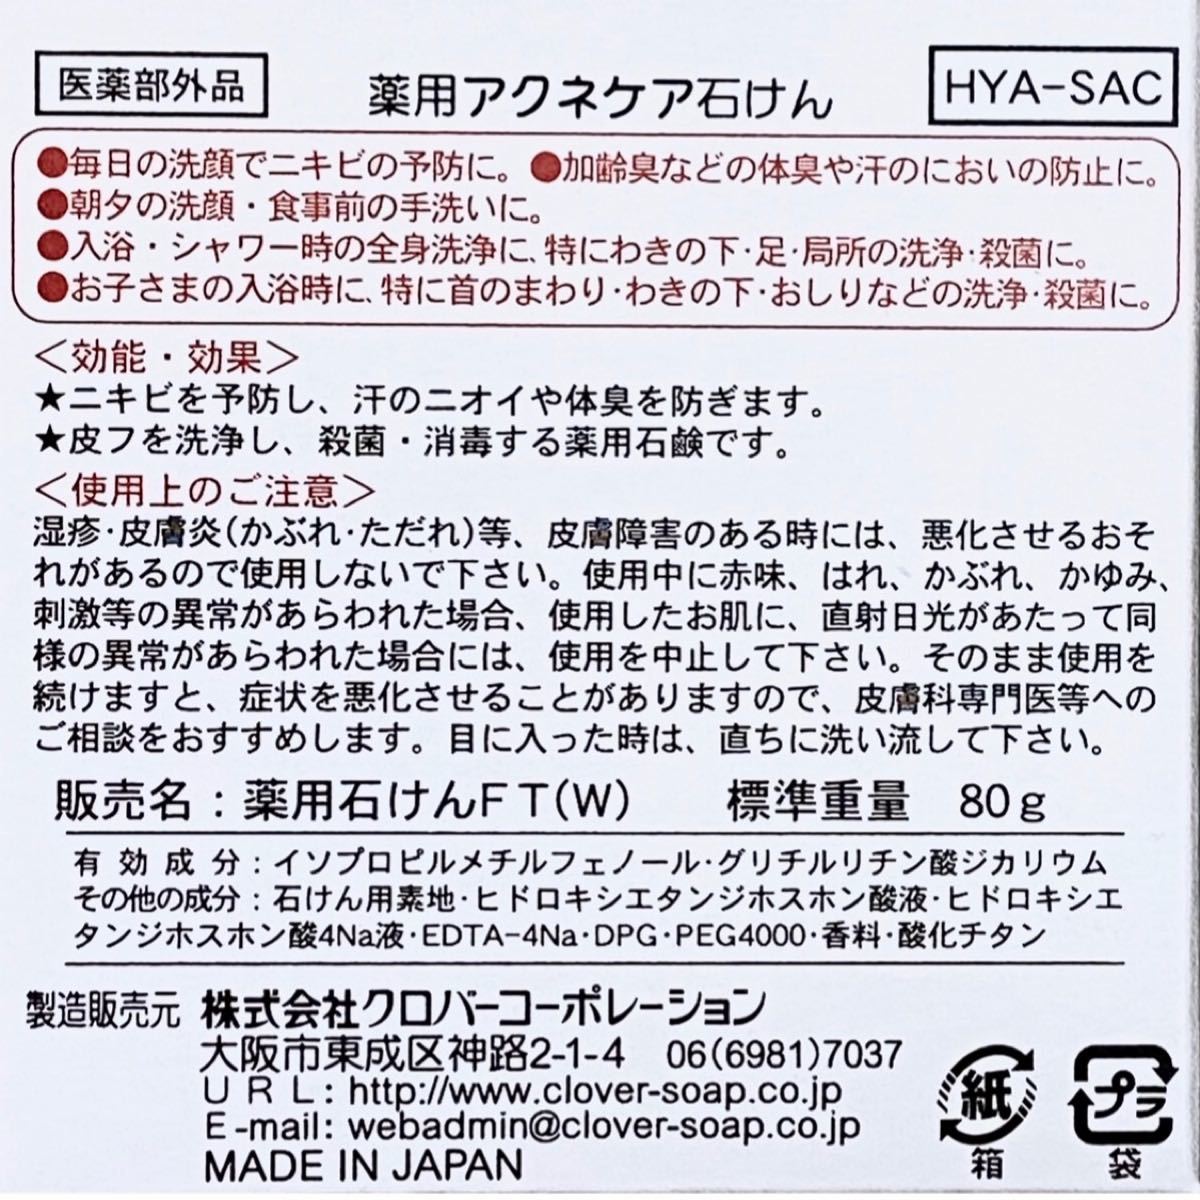 薬用 アクネケア 石けん 80g×3個【殺菌&消毒】ニキビ・ニオイ防止